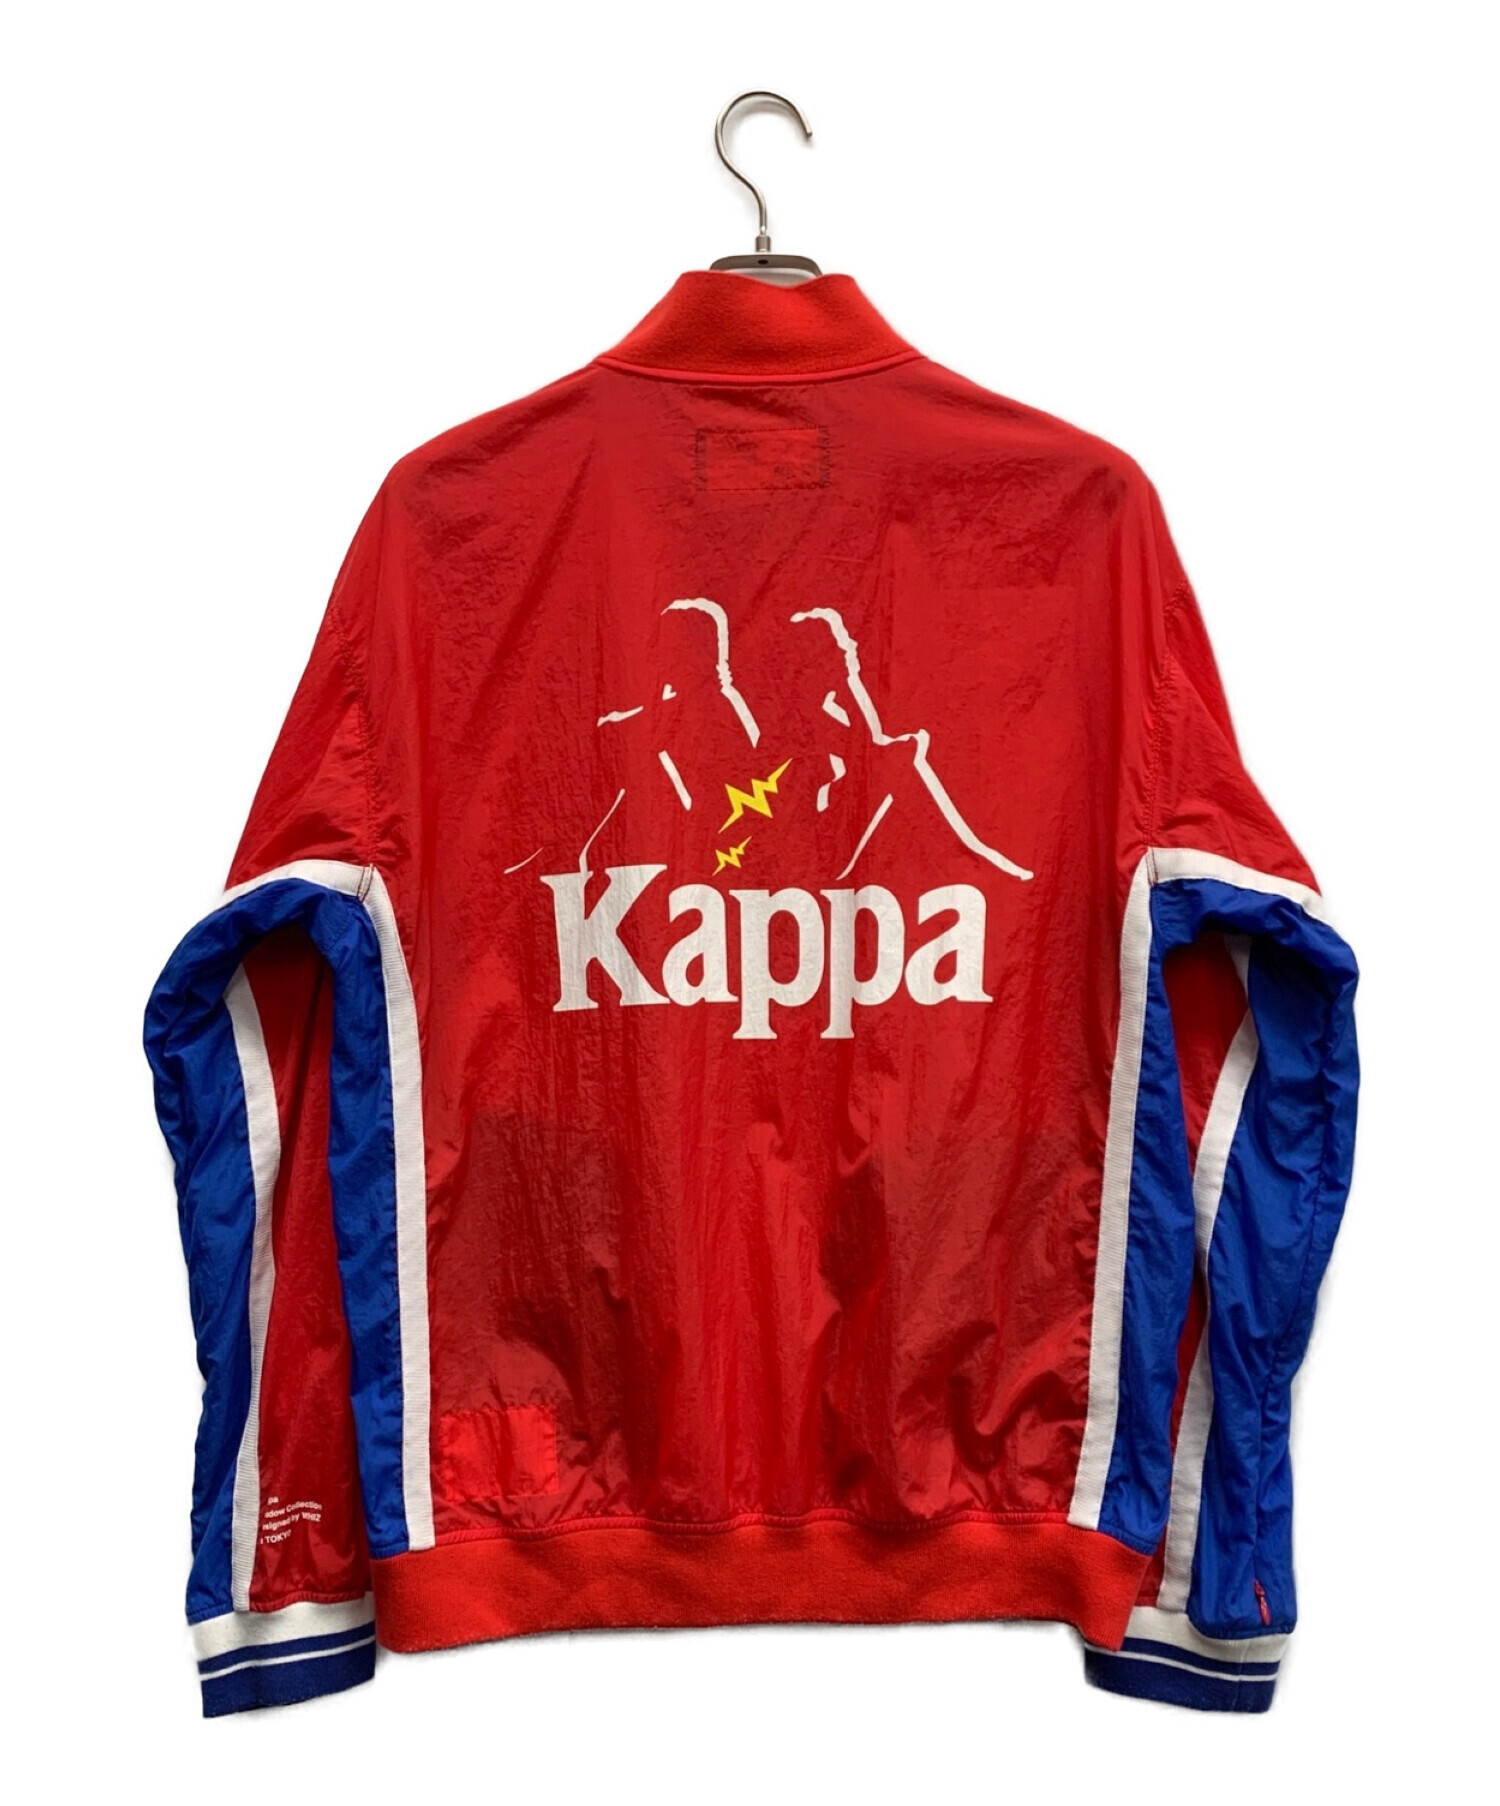 KAPPA (カッパ) whiz limited (ウィズリミテッド) ナイロンブルゾン レッド×ブルー サイズ:L